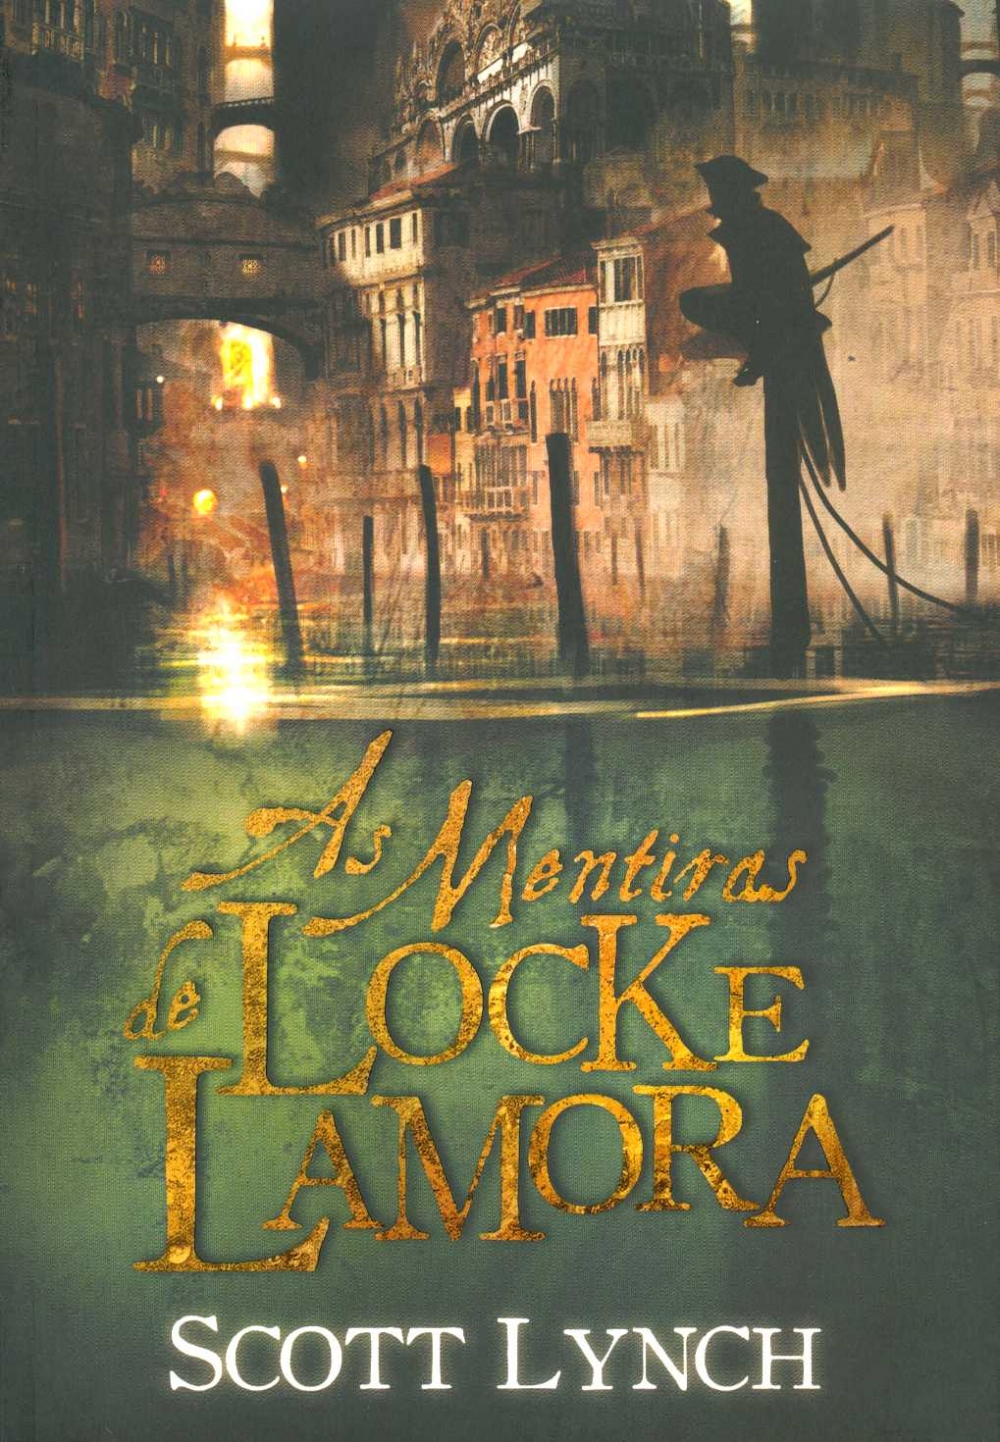 As mentiras de Locke Lamora